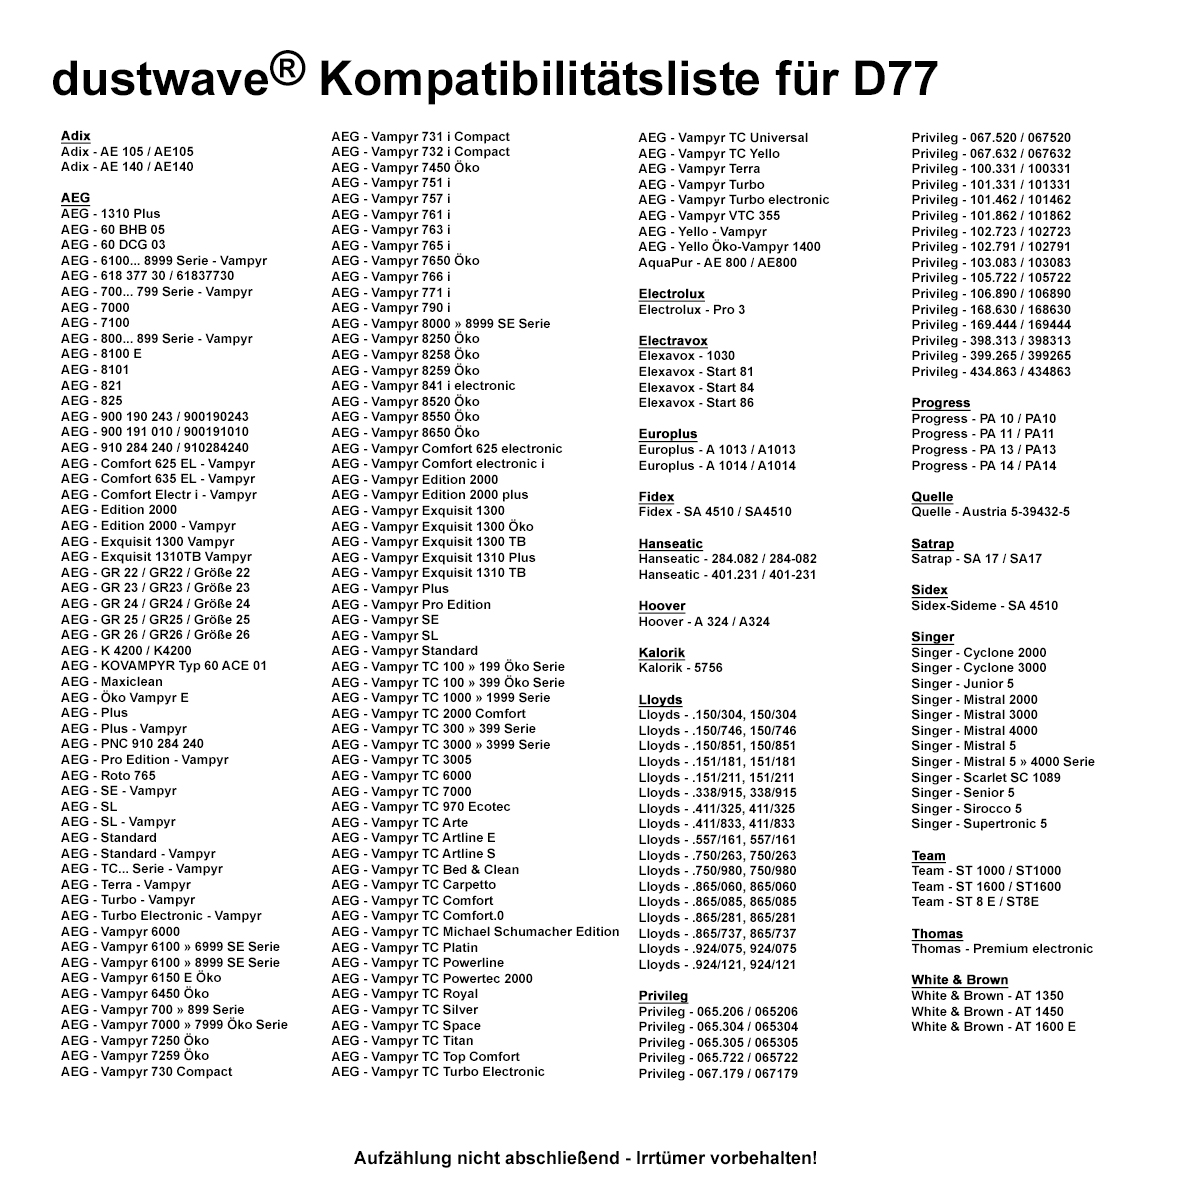 Dustwave® 10 Staubsaugerbeutel für AEG Vampyr TC 300 / 305 / 307 / 3005 - hocheffizient, mehrlagiges Mikrovlies mit Hygieneverschluss - Made in Germany